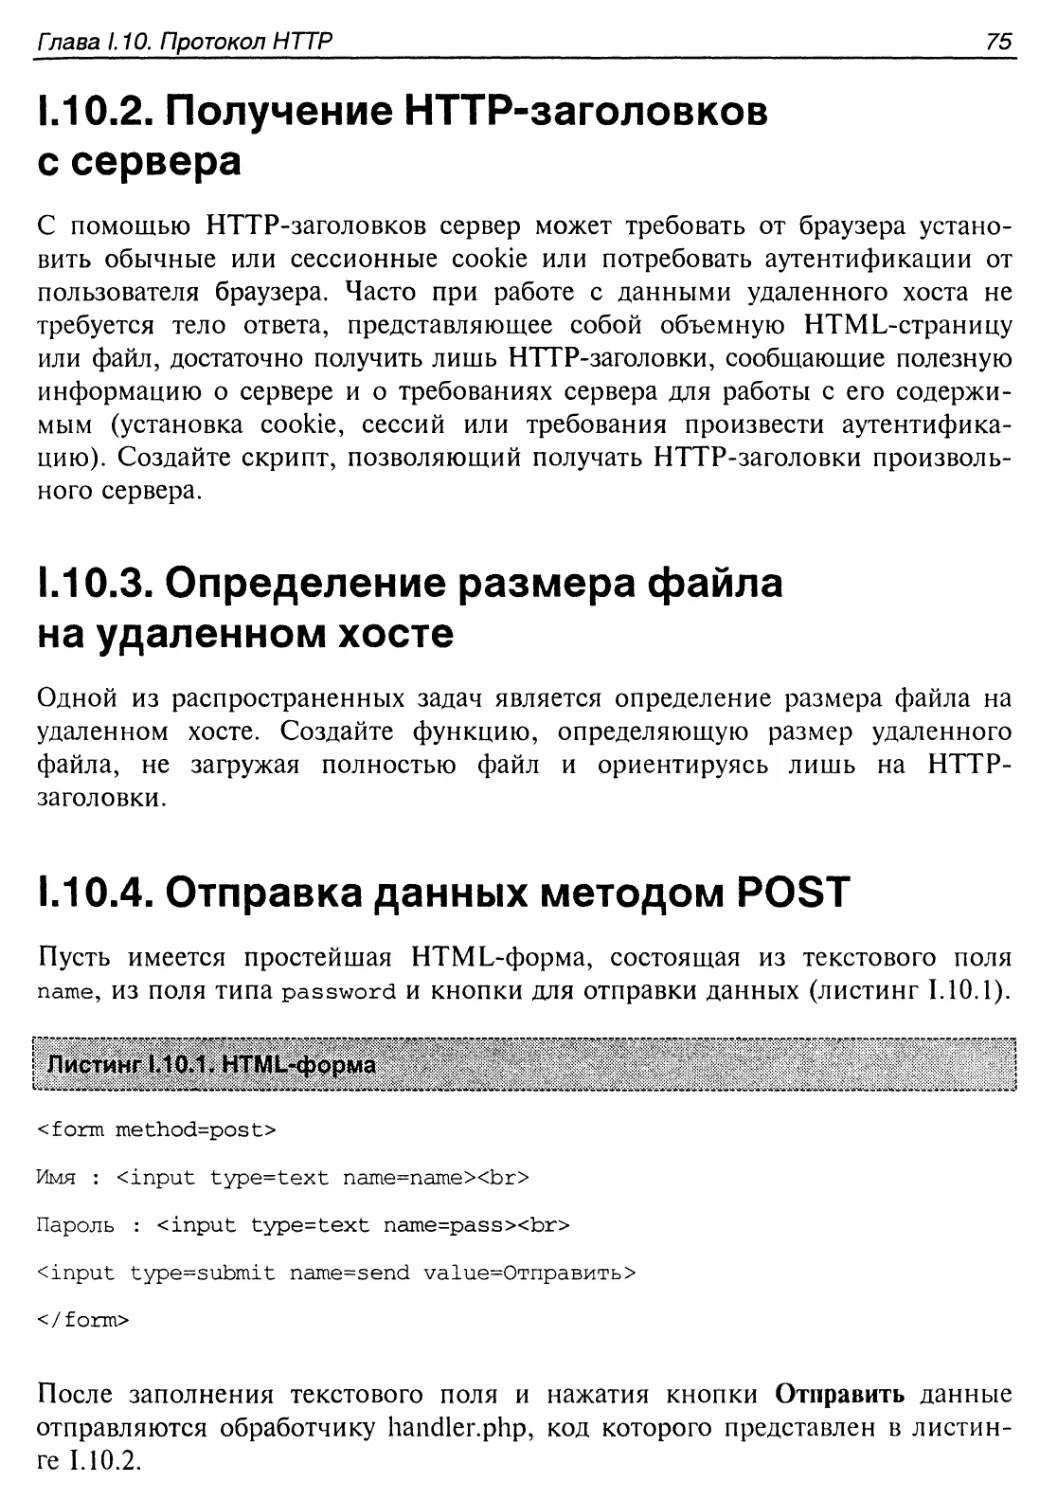 1.10.2. Получение HTTP-заголовков с сервера
1.10.3. Определение размера файла на удаленном хосте
1.10.4. Отправка данных методом POST